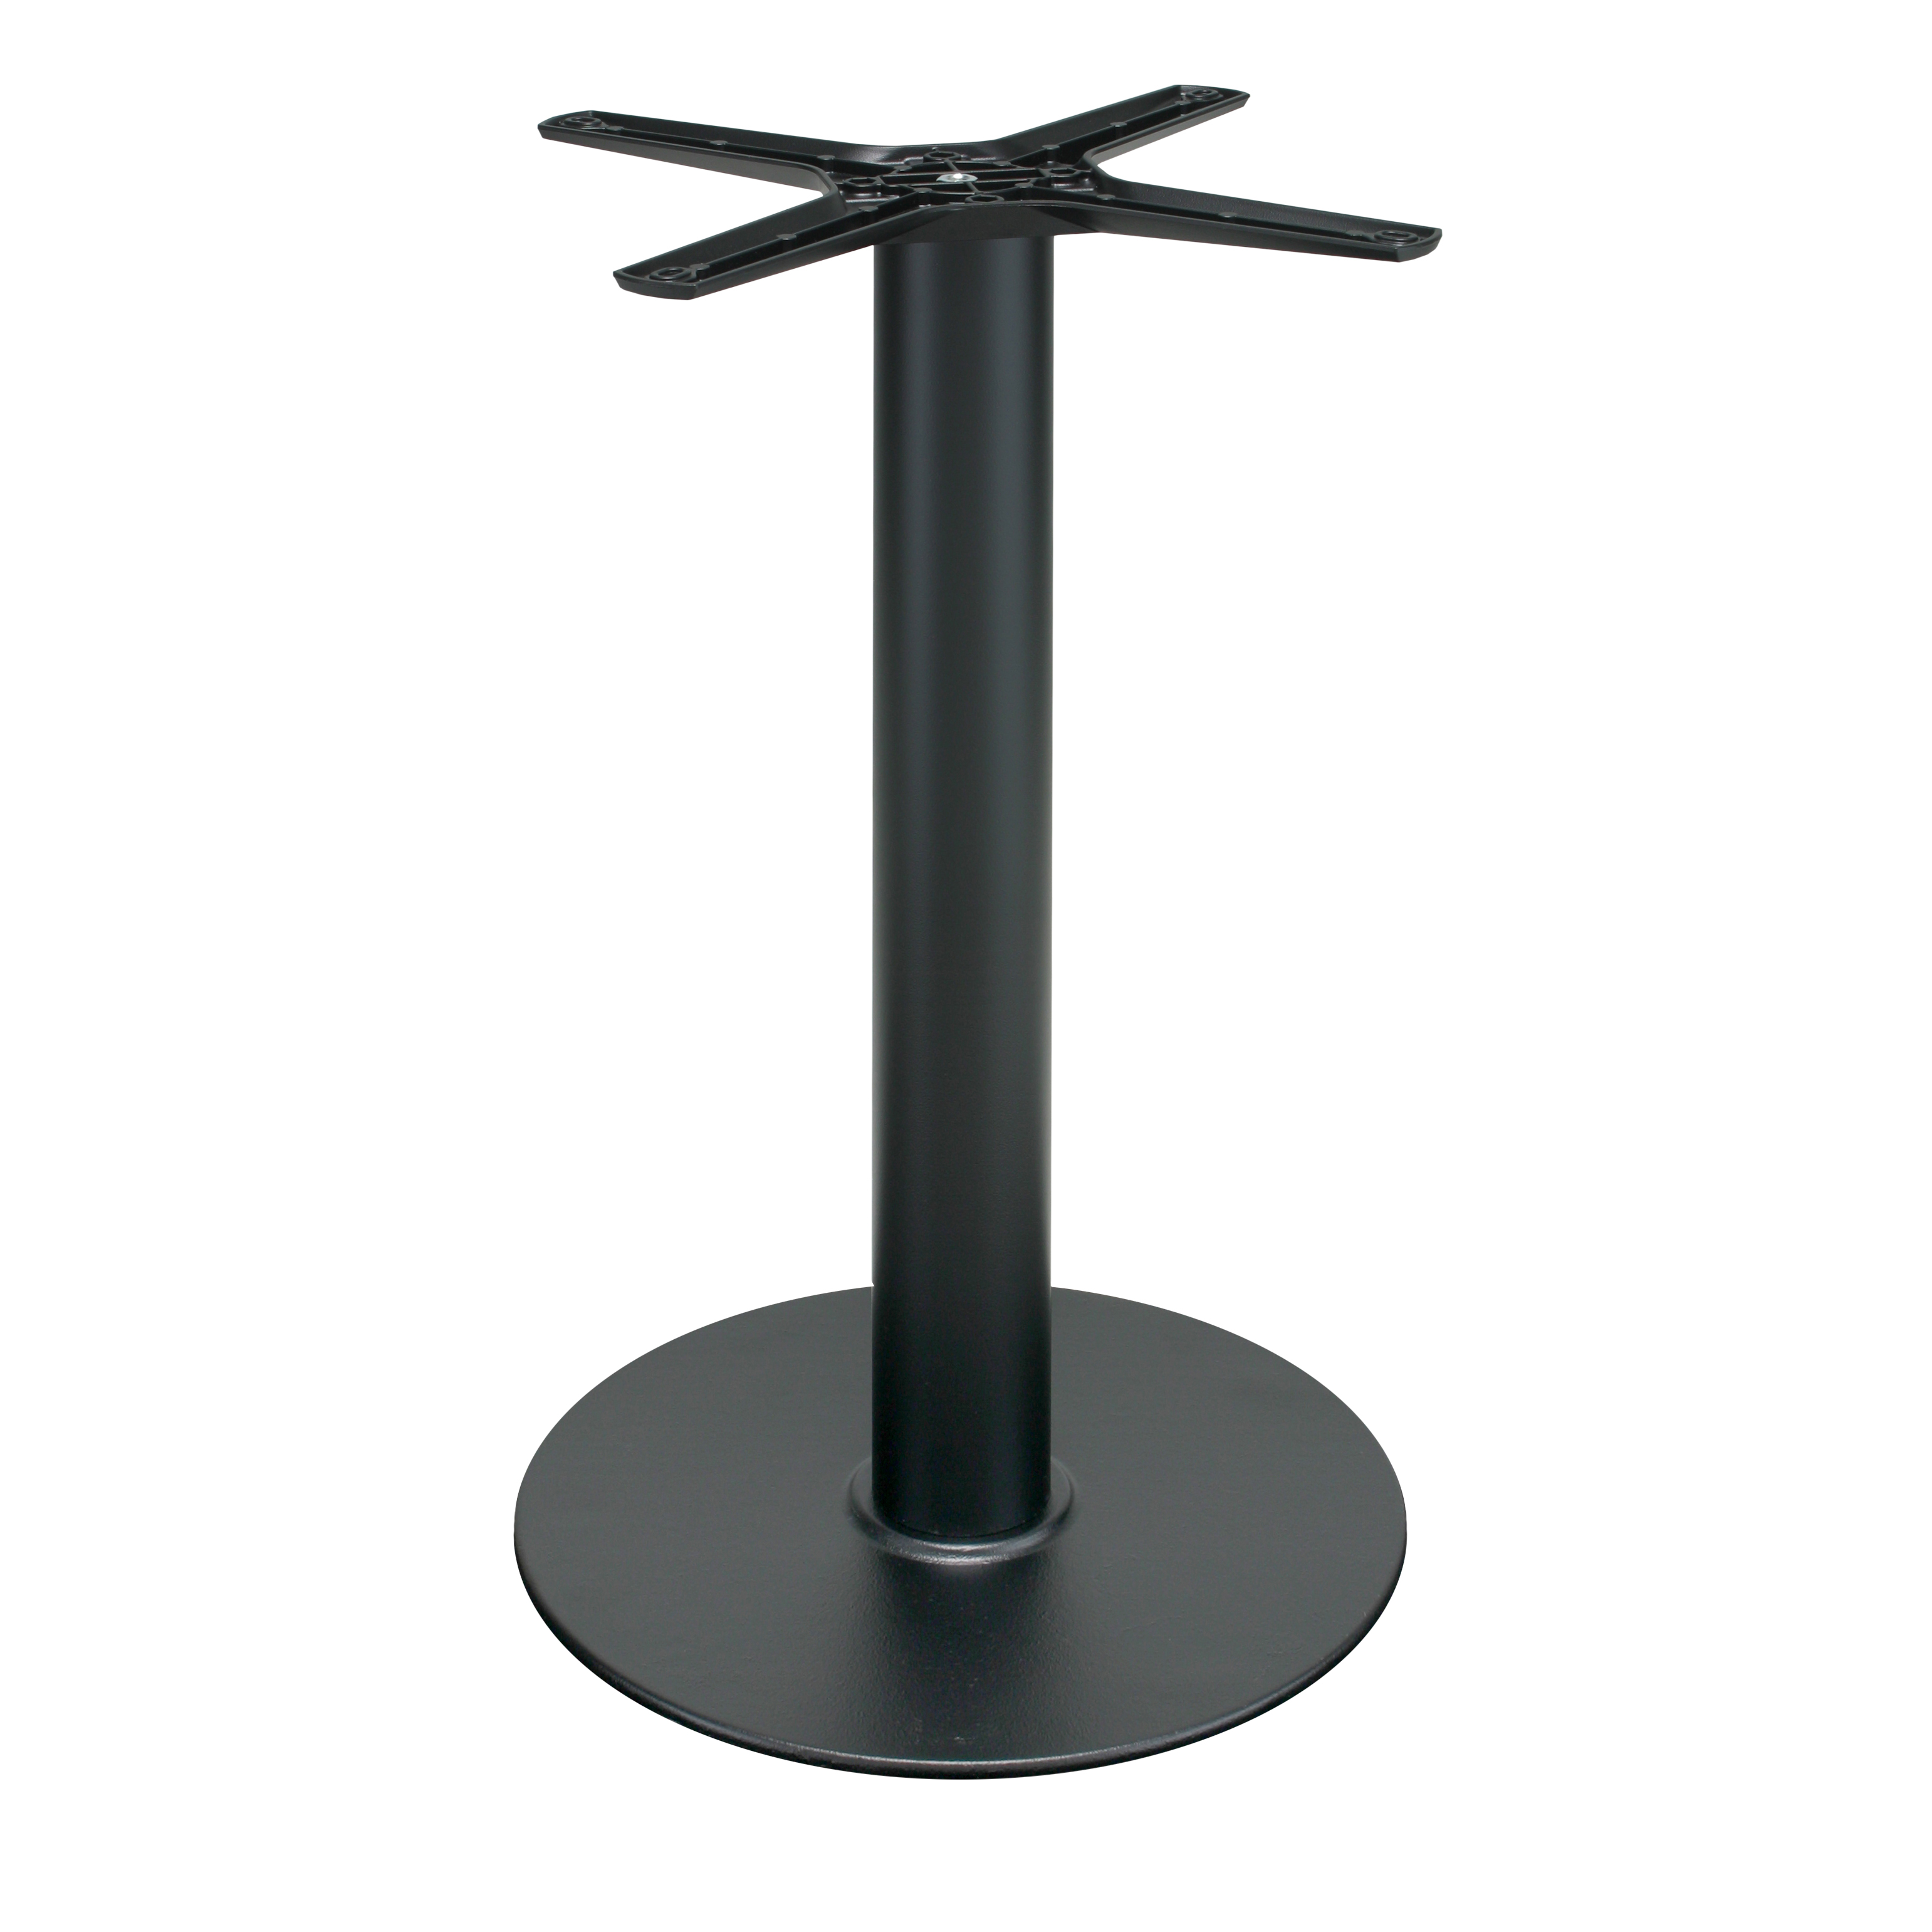 Gusseisen Tischgestell (Tischbein) P109, pulverbeschichtet schwarz, rund